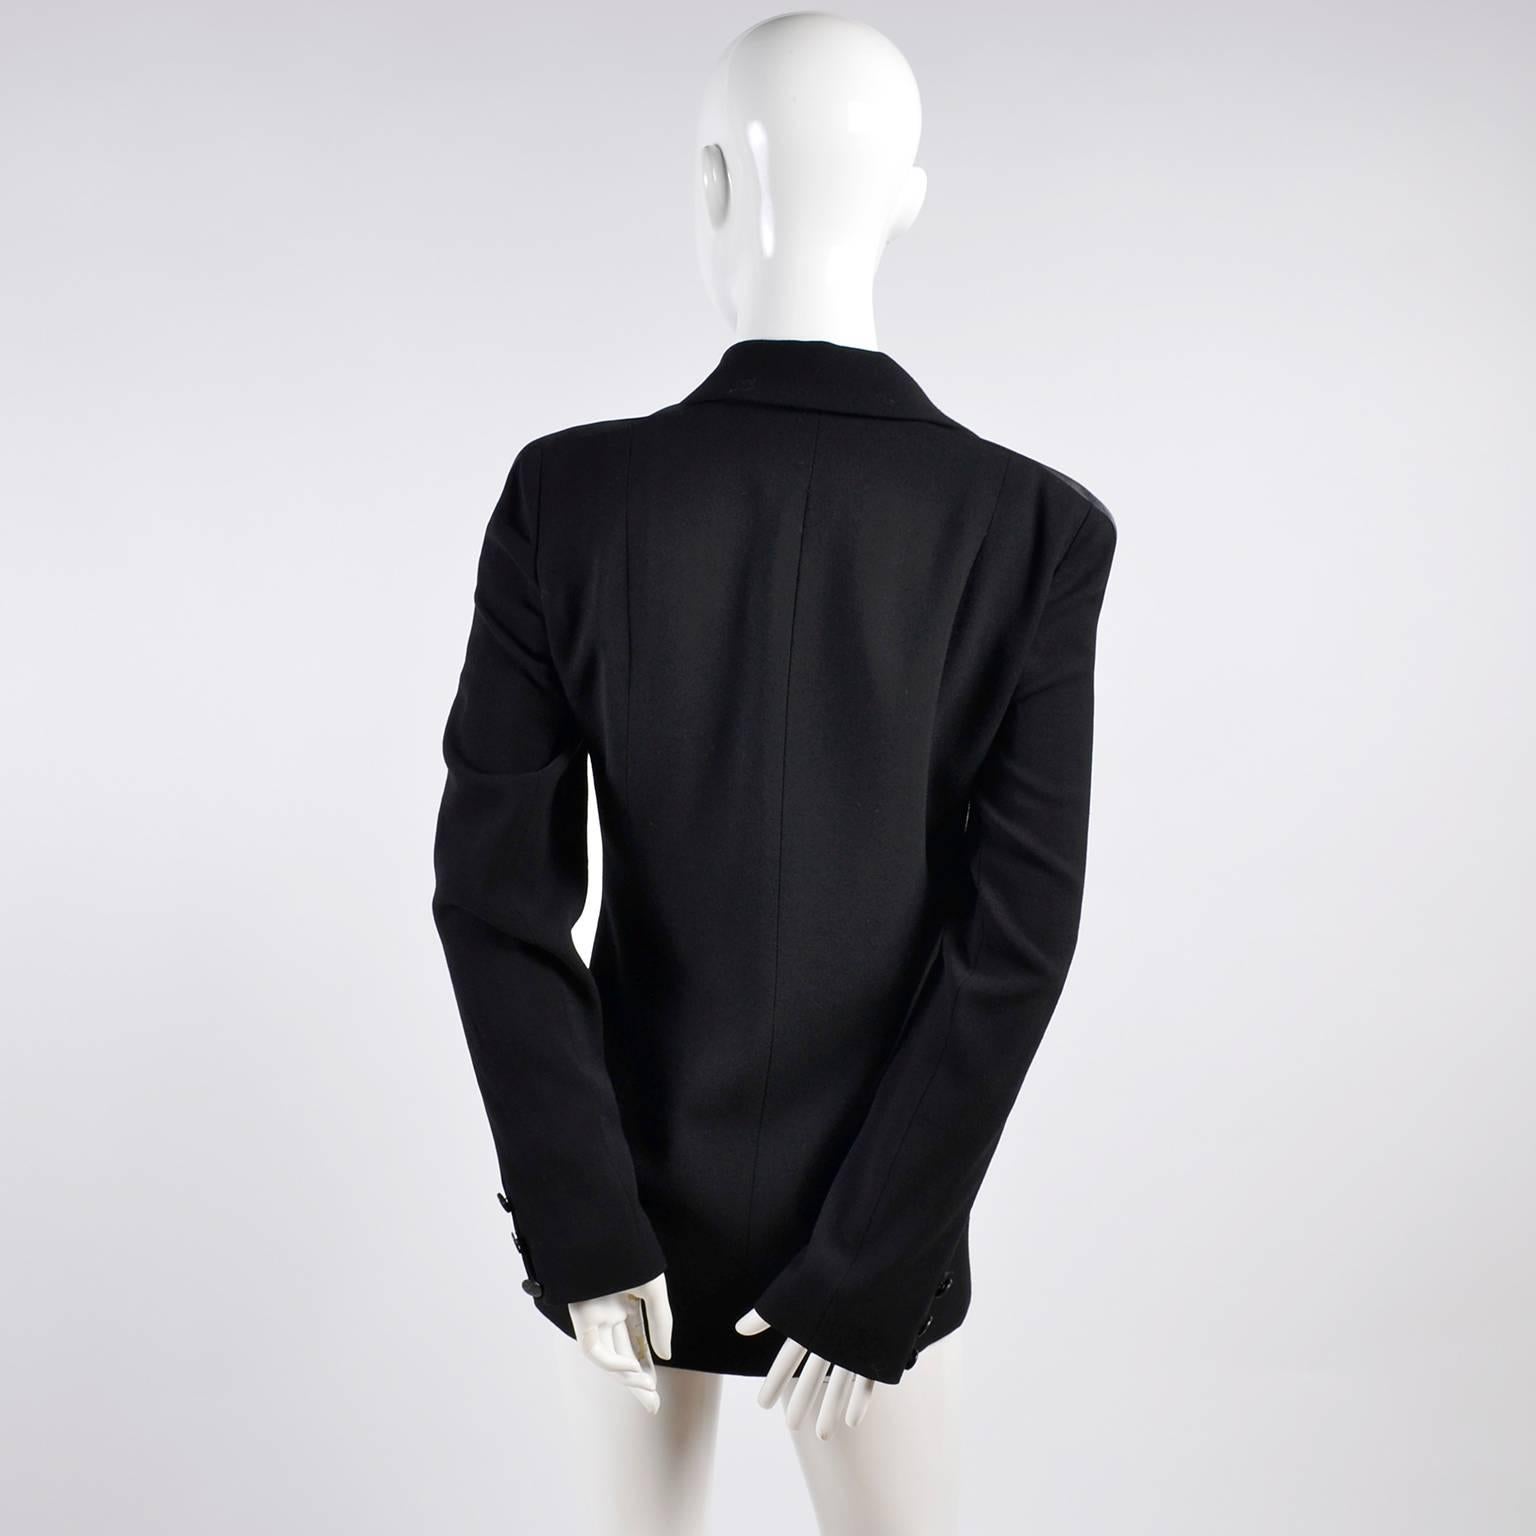 2003 Chanel Jacket Black Wool Blazer W Satin Stripes in Size 38 (Schwarz)